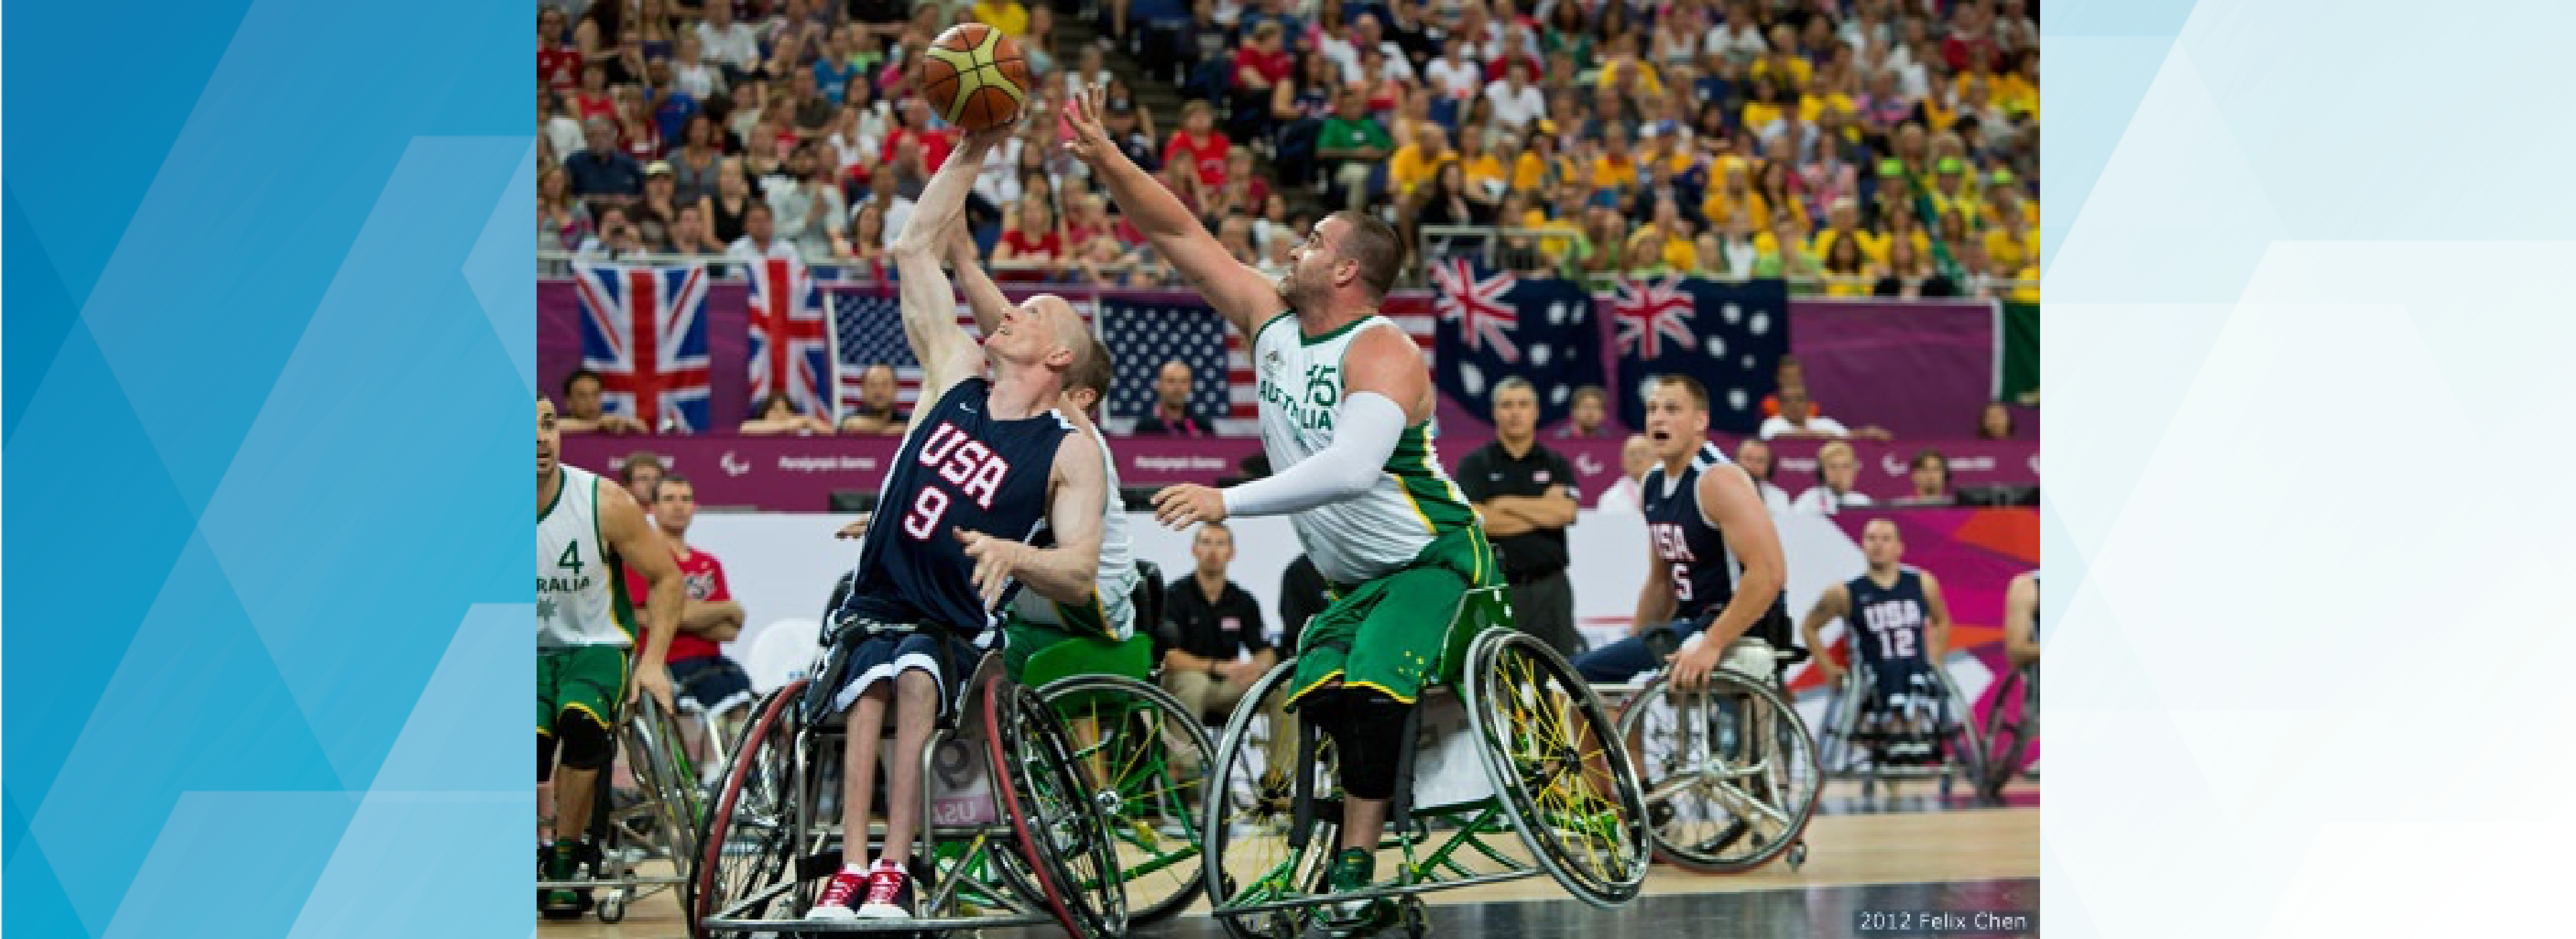 Will Waller Wheelchair Basketball